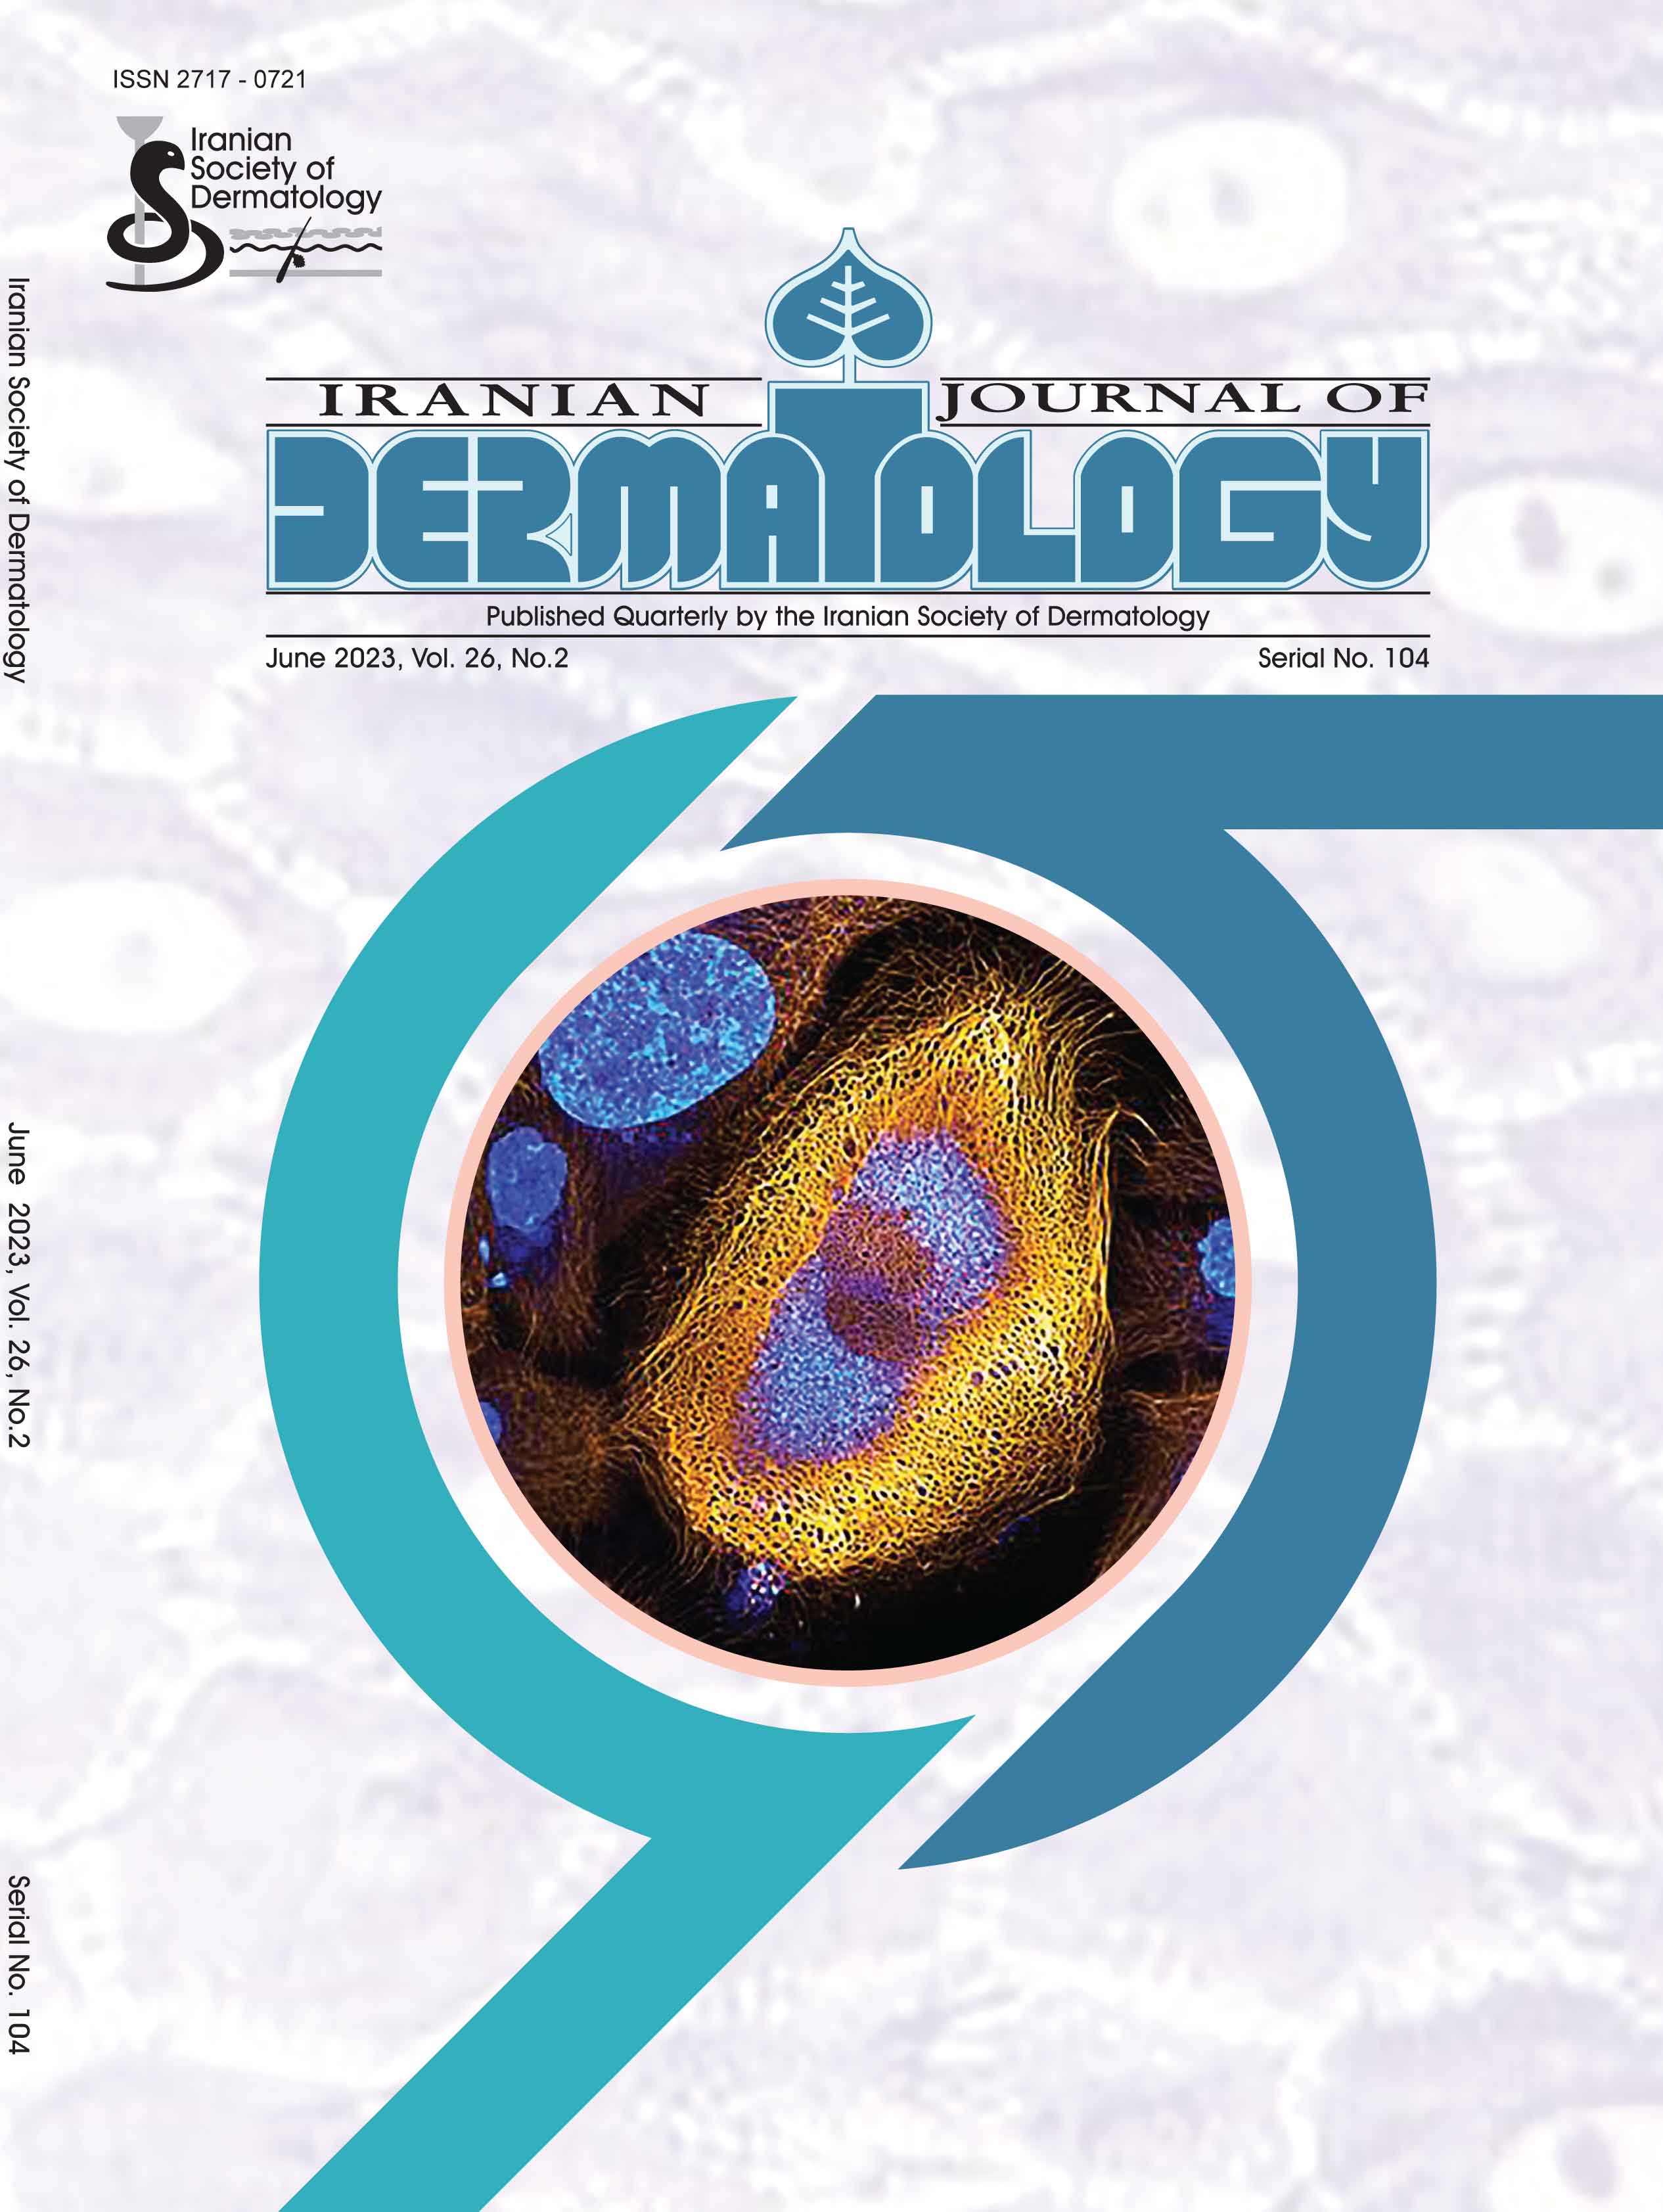 Iranian Journal of Dermatology